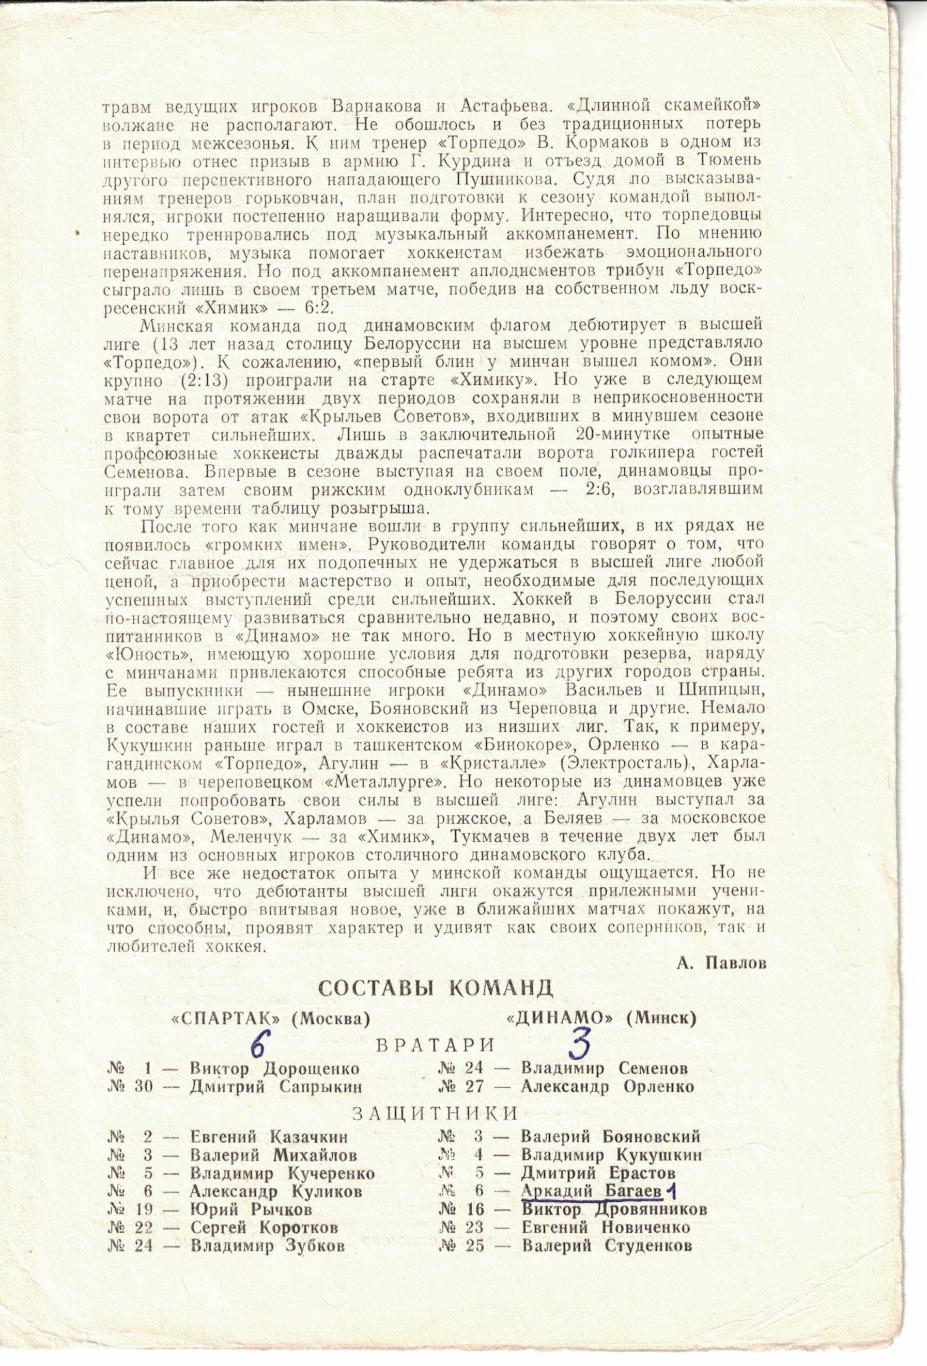 Спартак Москва - Динамо Минск, ЦСКА - Торпедо Горький 04 и 05.10.1980 1